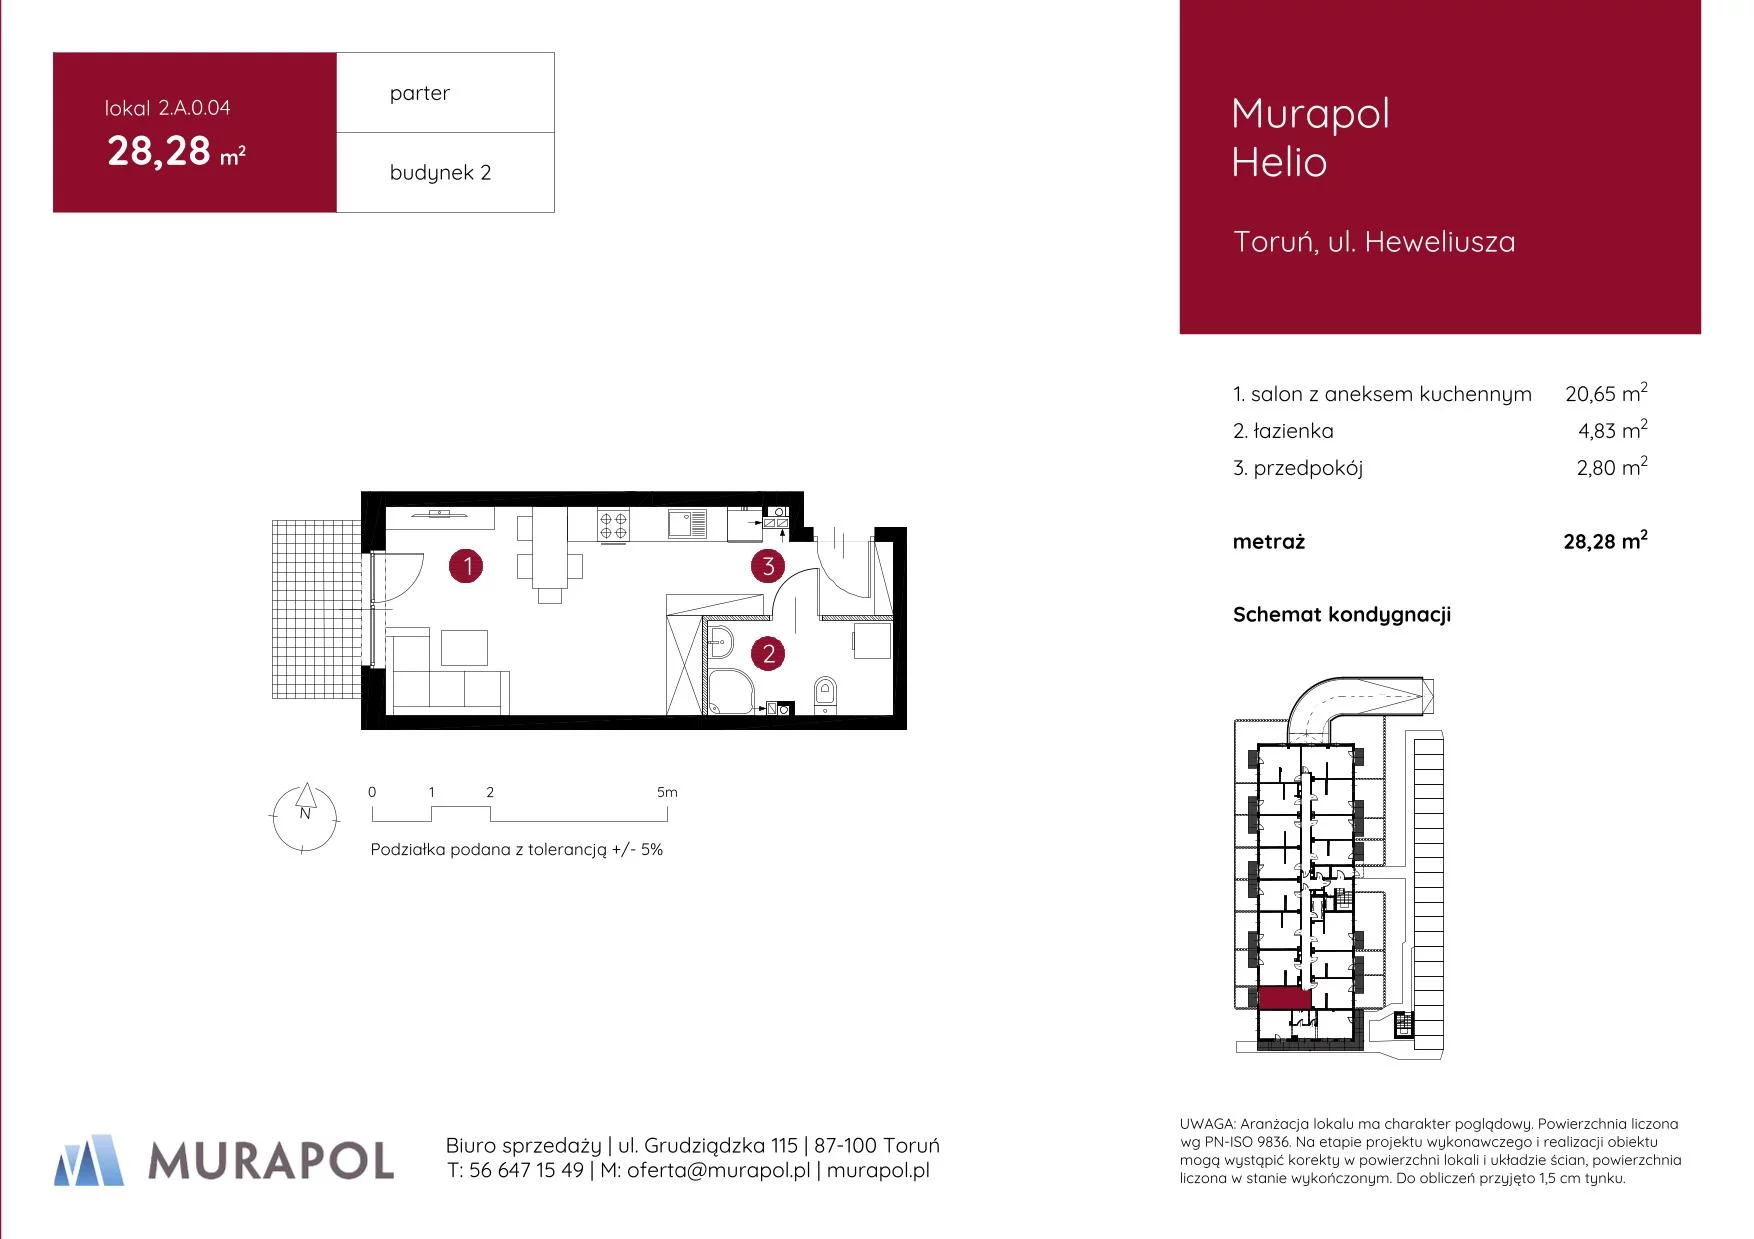 Mieszkanie 28,28 m², parter, oferta nr 2.A.0.04, Murapol Helio, Toruń, Wrzosy, JAR, ul. Heweliusza